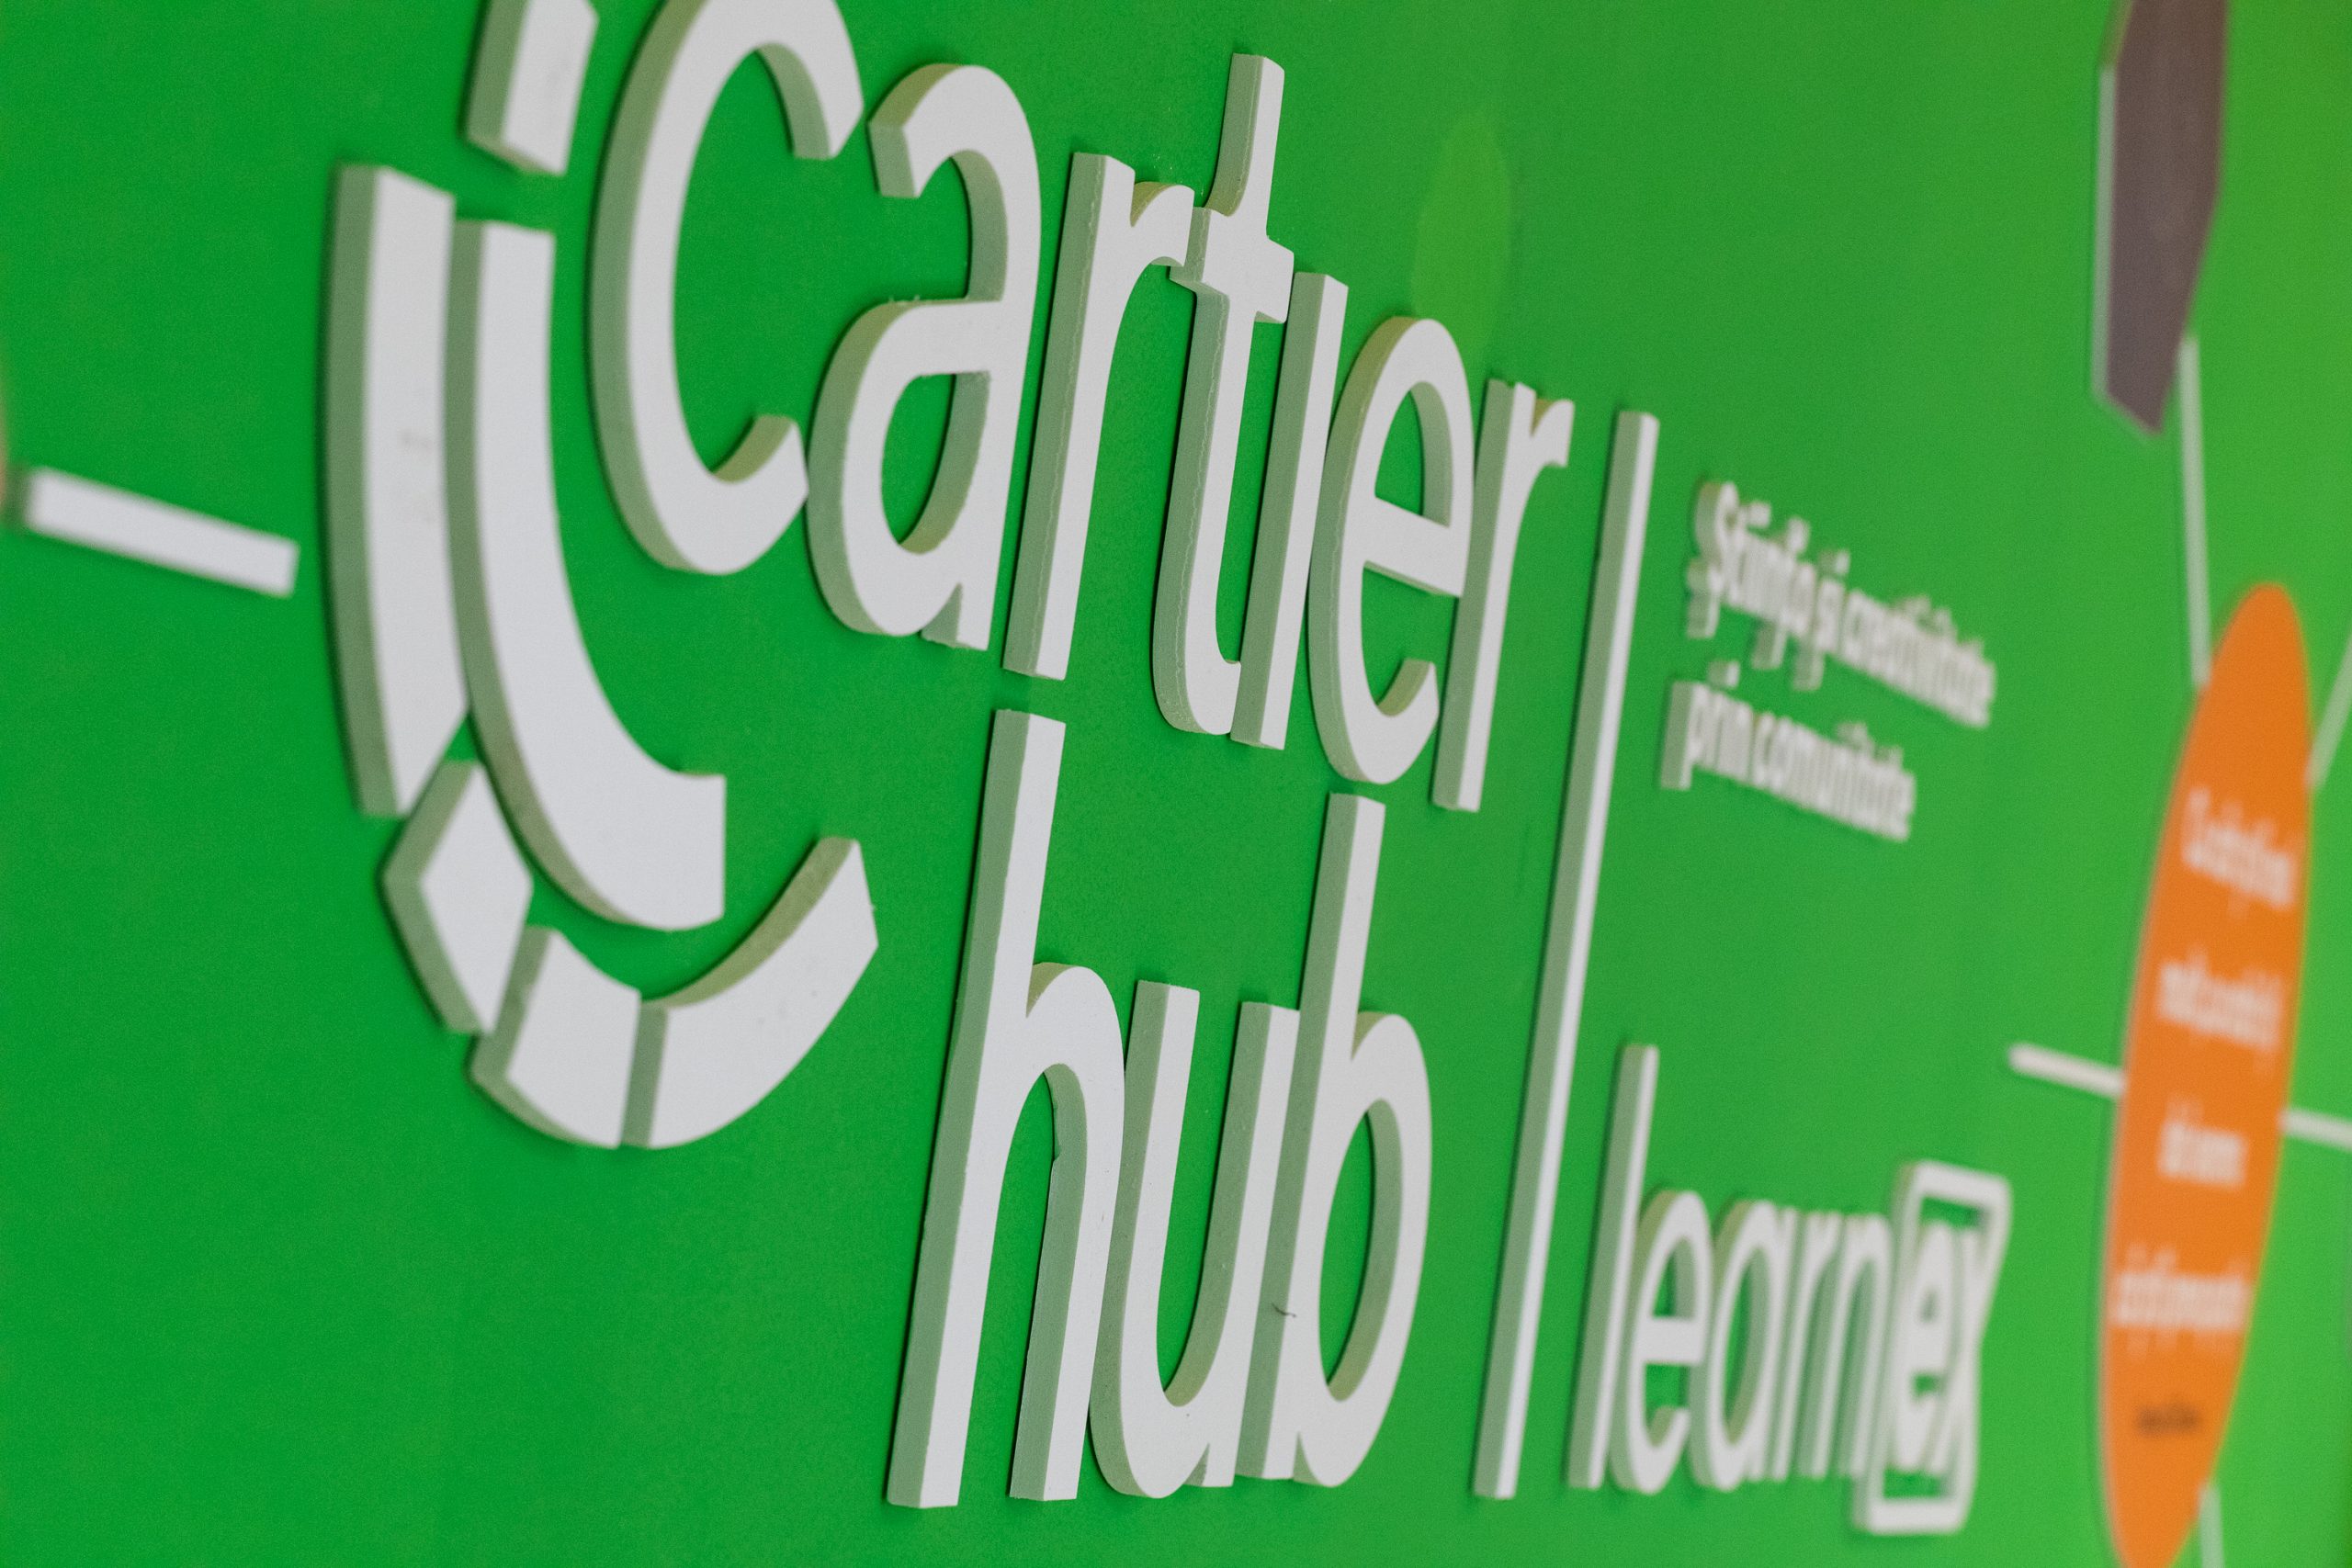  Cartier Hub Brașov, un proiect educațional dedicat comunității Coresi